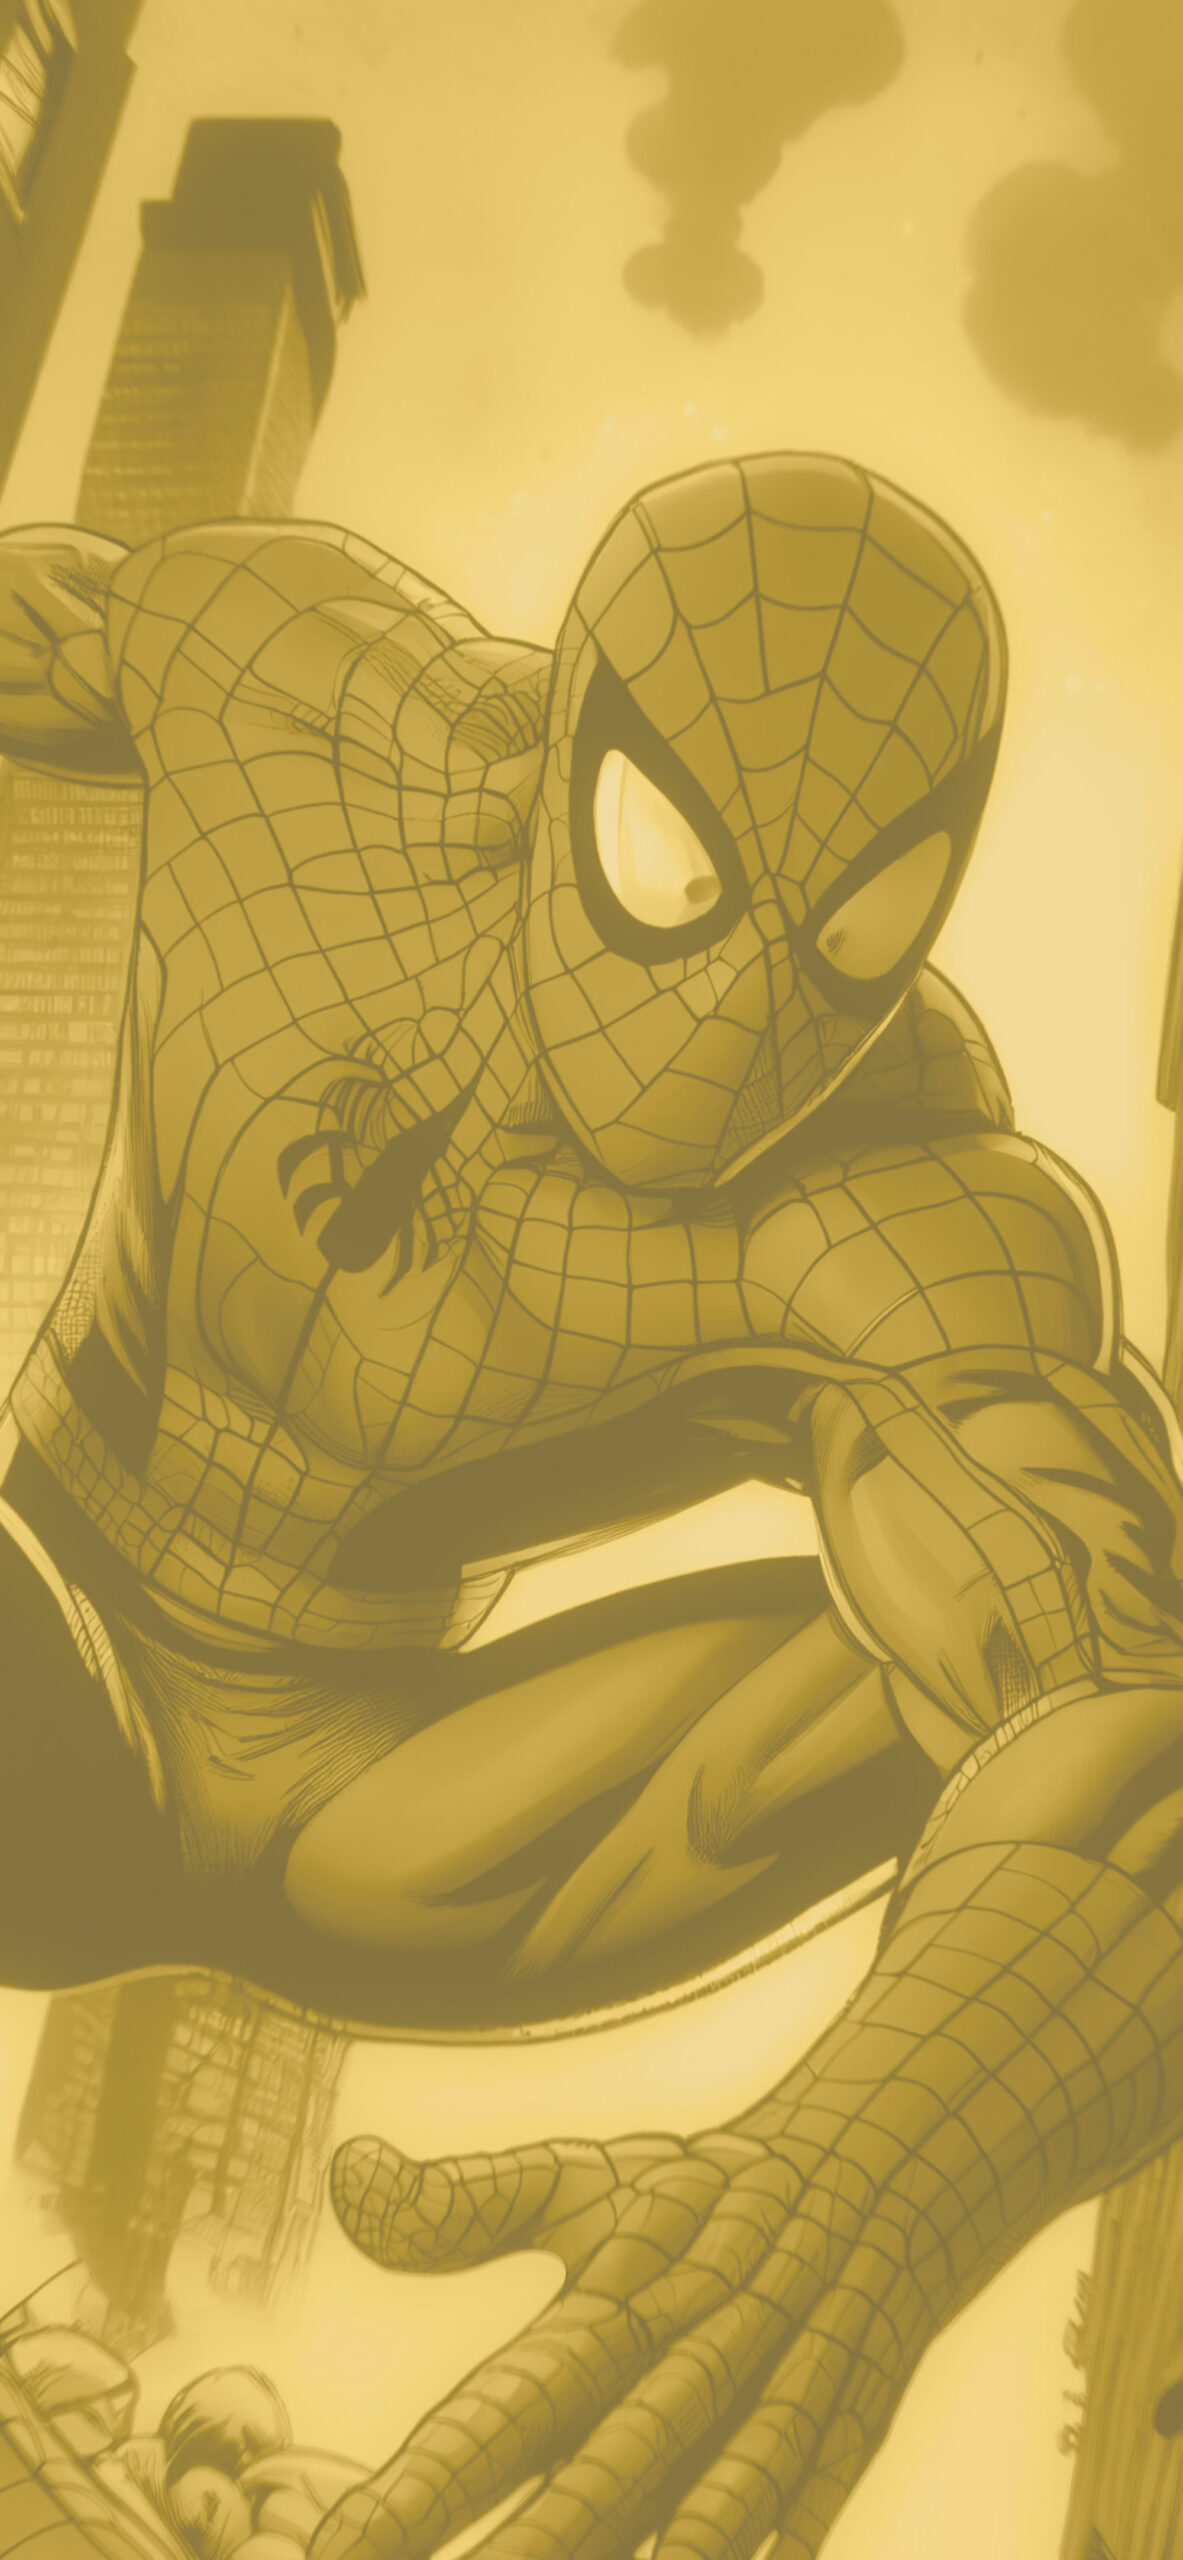 comic spider man background